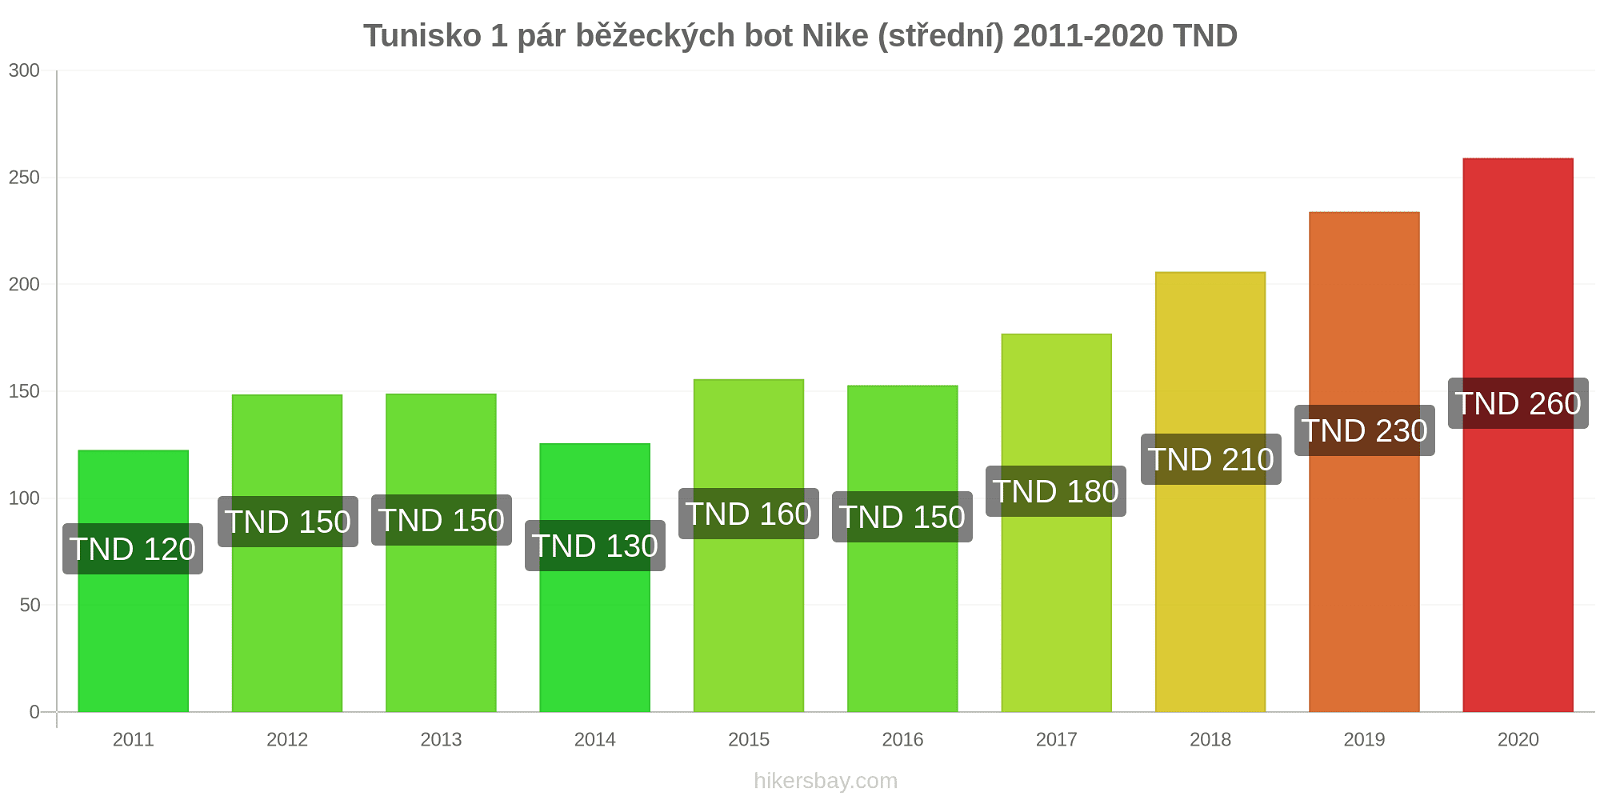 Tunisko změny cen 1 pár běžeckých bot Nike (střední) hikersbay.com